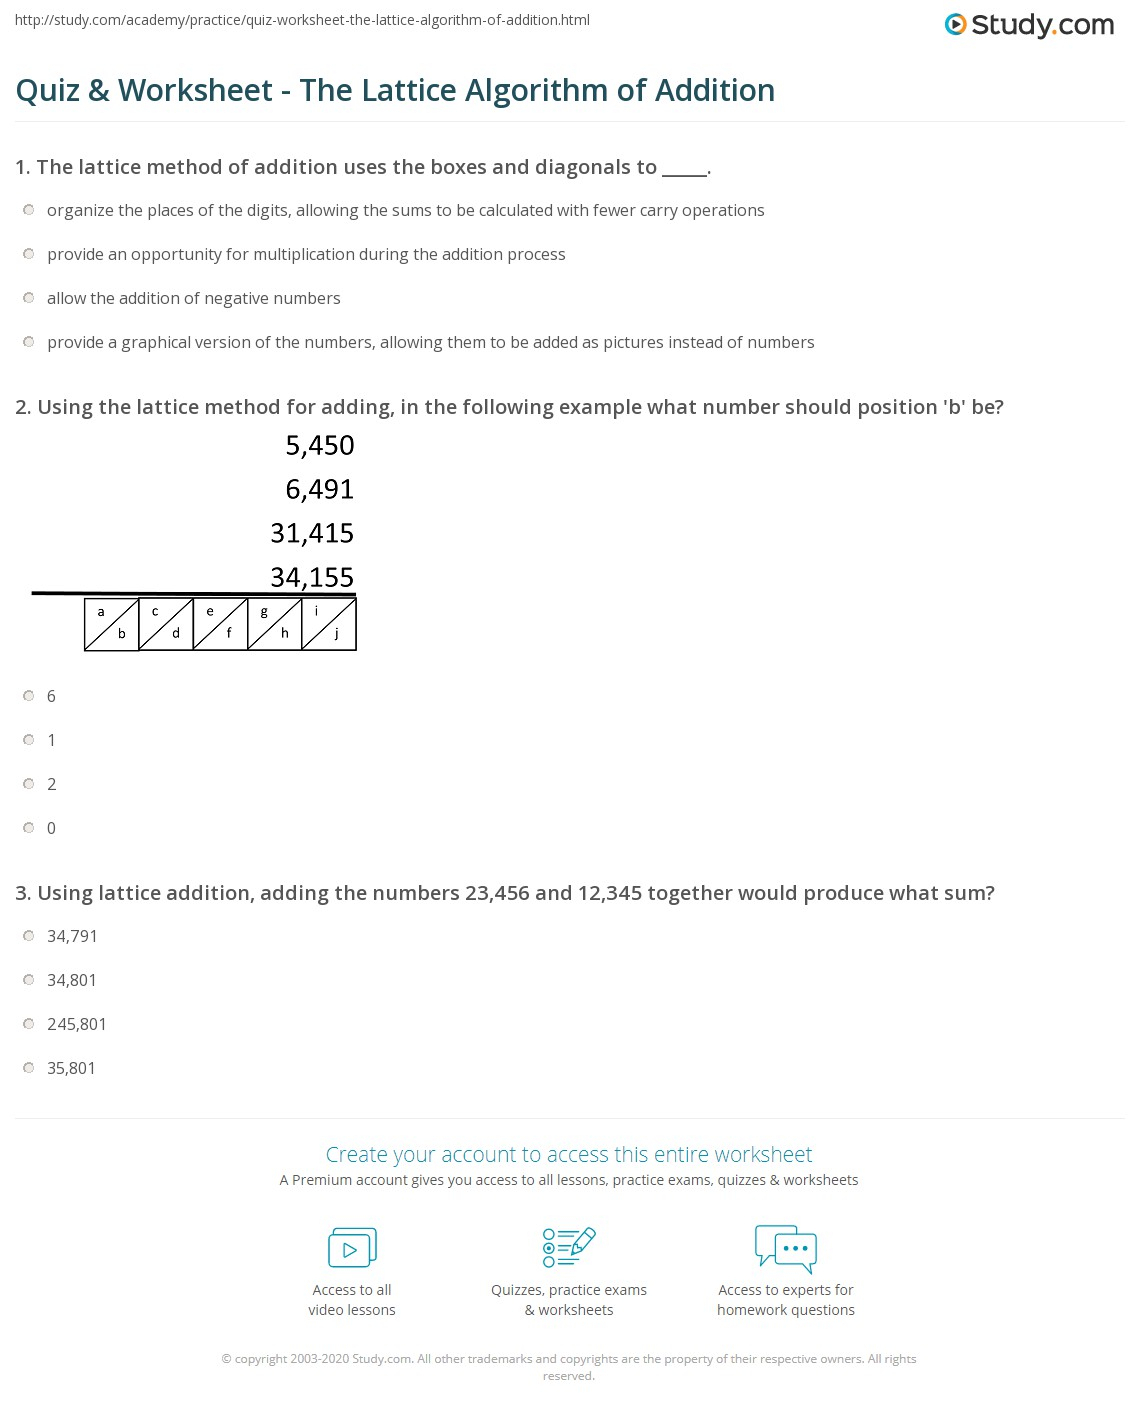  Multiplication Worksheets Lattice Method PrintableMultiplication